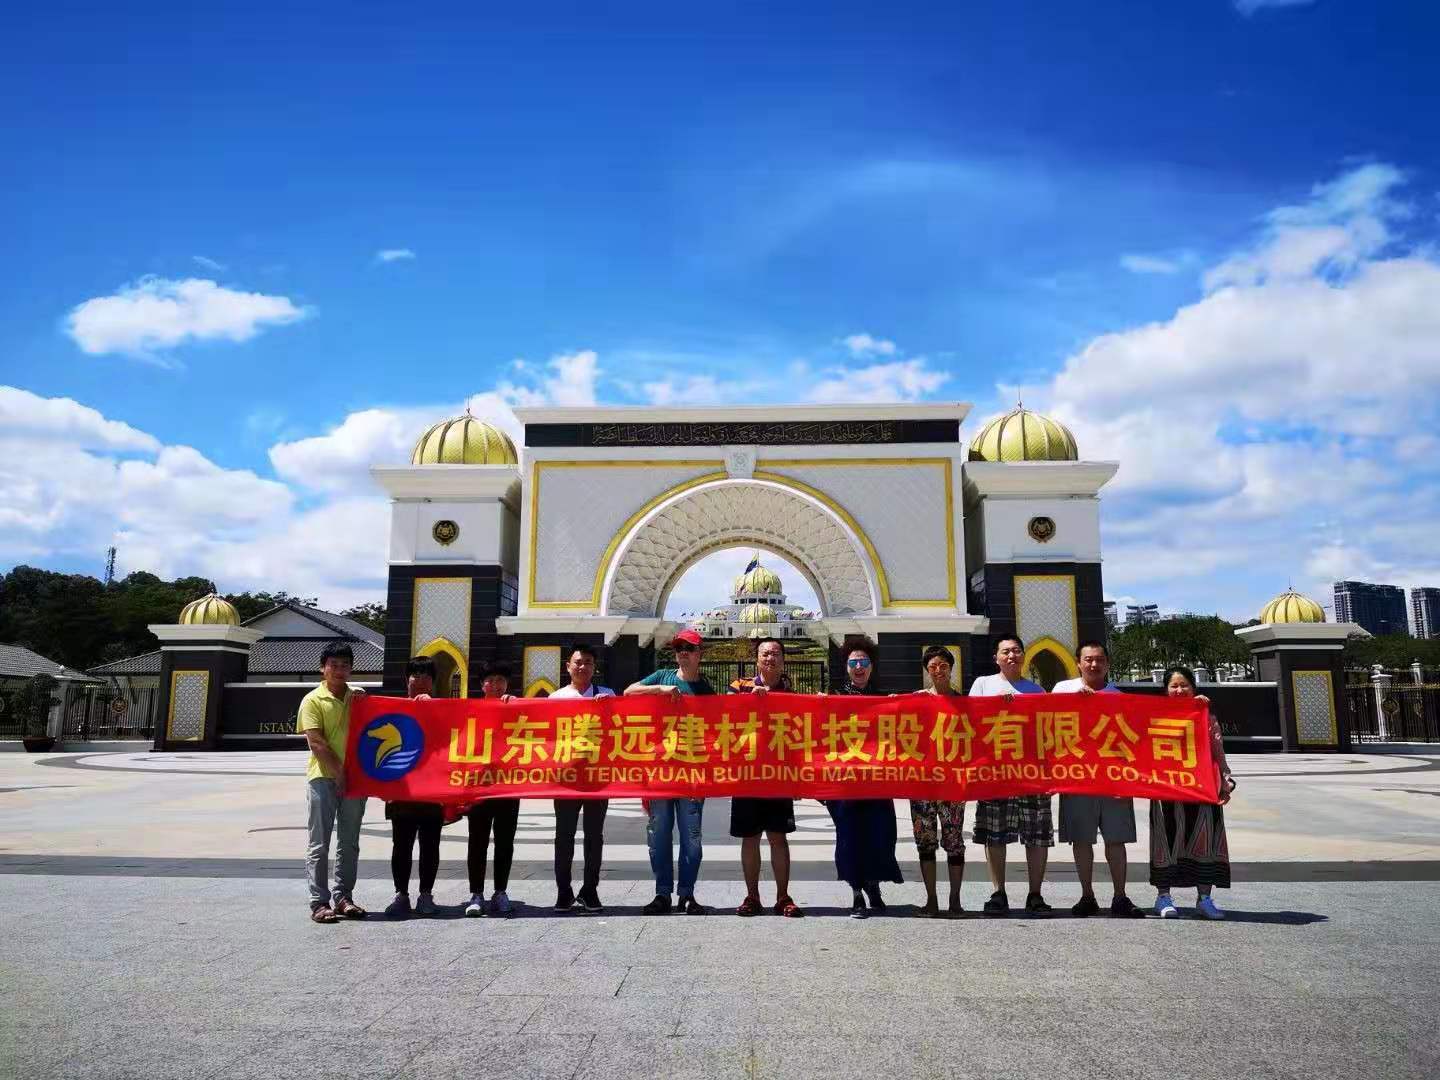 正值2019年春节到来之际，腾远集团组织部分员工参加新加坡-马来西亚-泰国为期一周的旅游